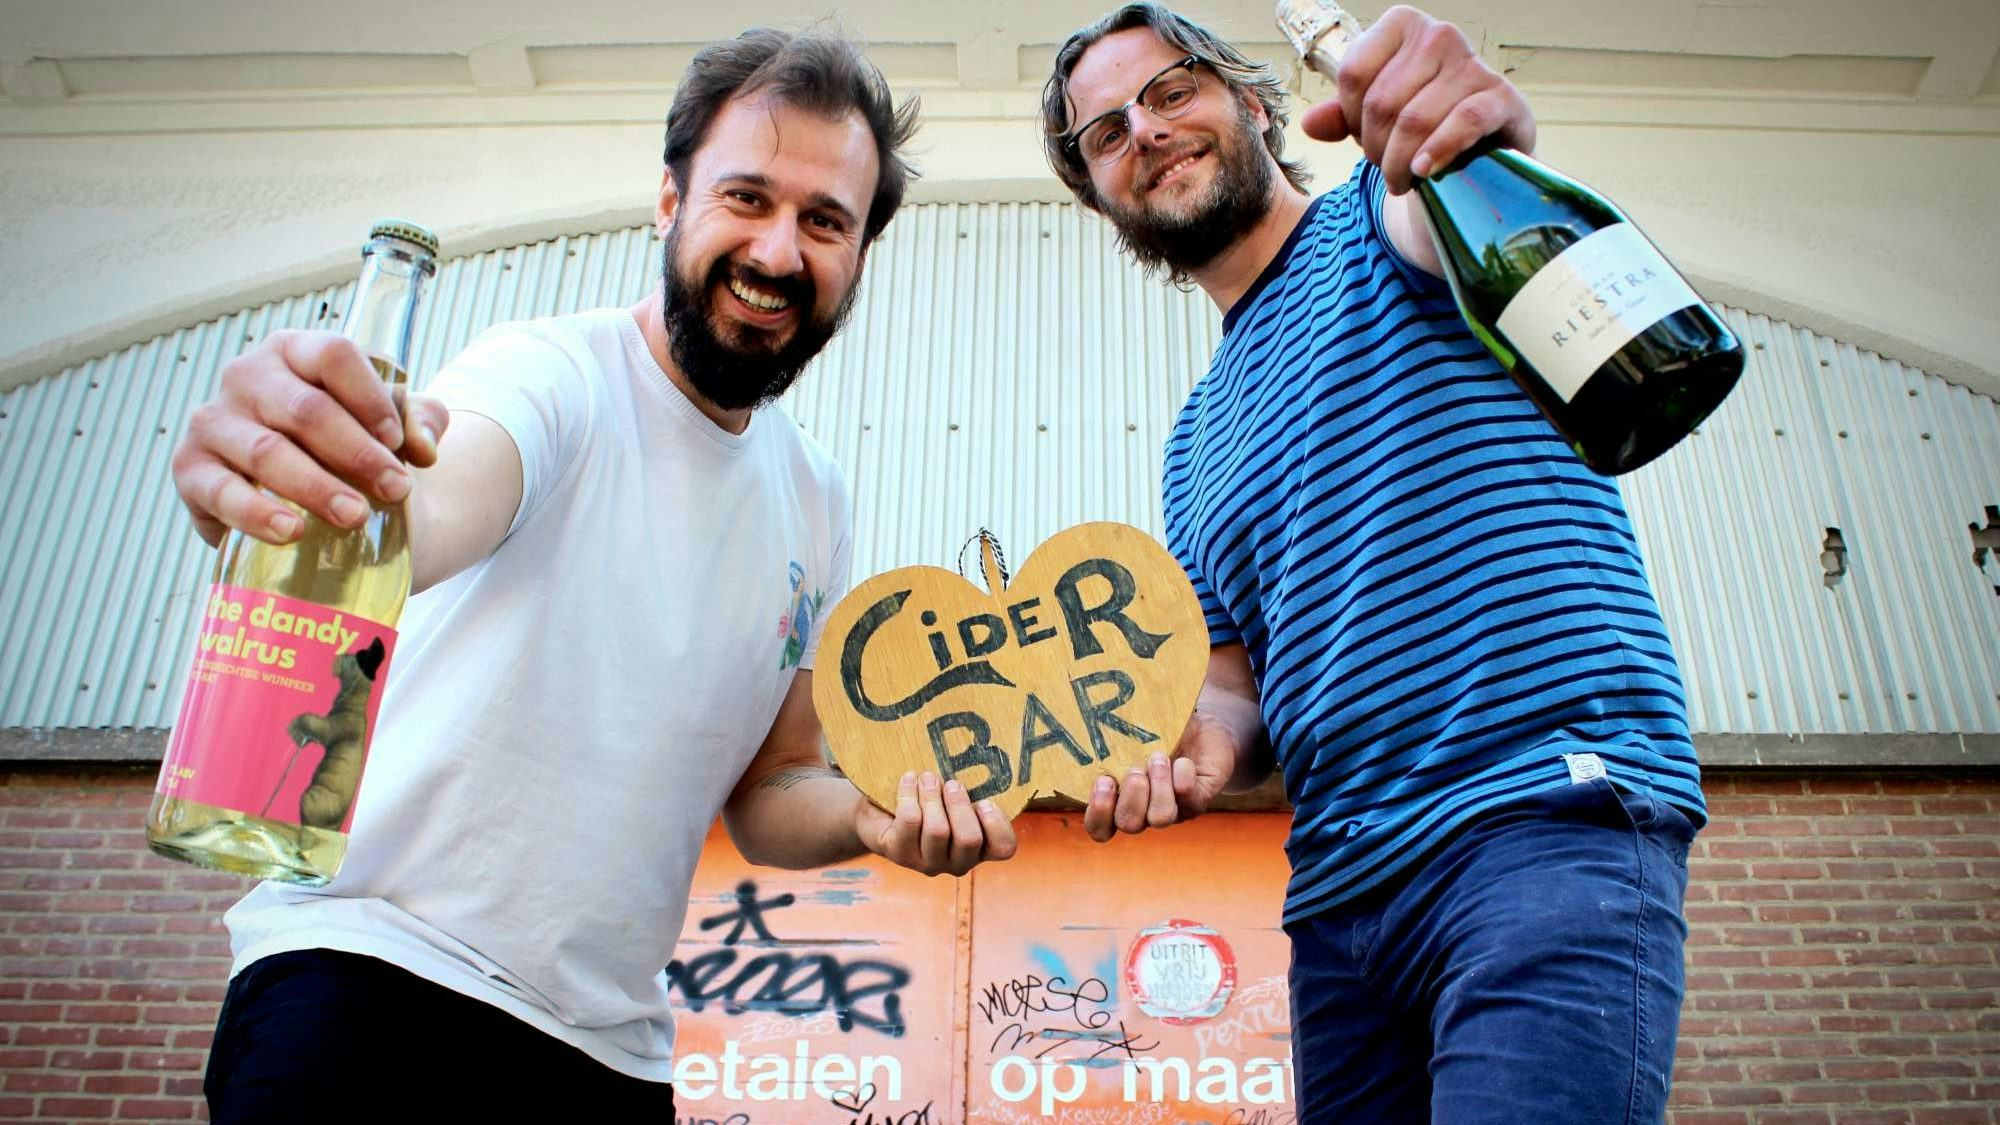 De Ciderbar: enige Nederlandse ciderbar opent in Rotterdam